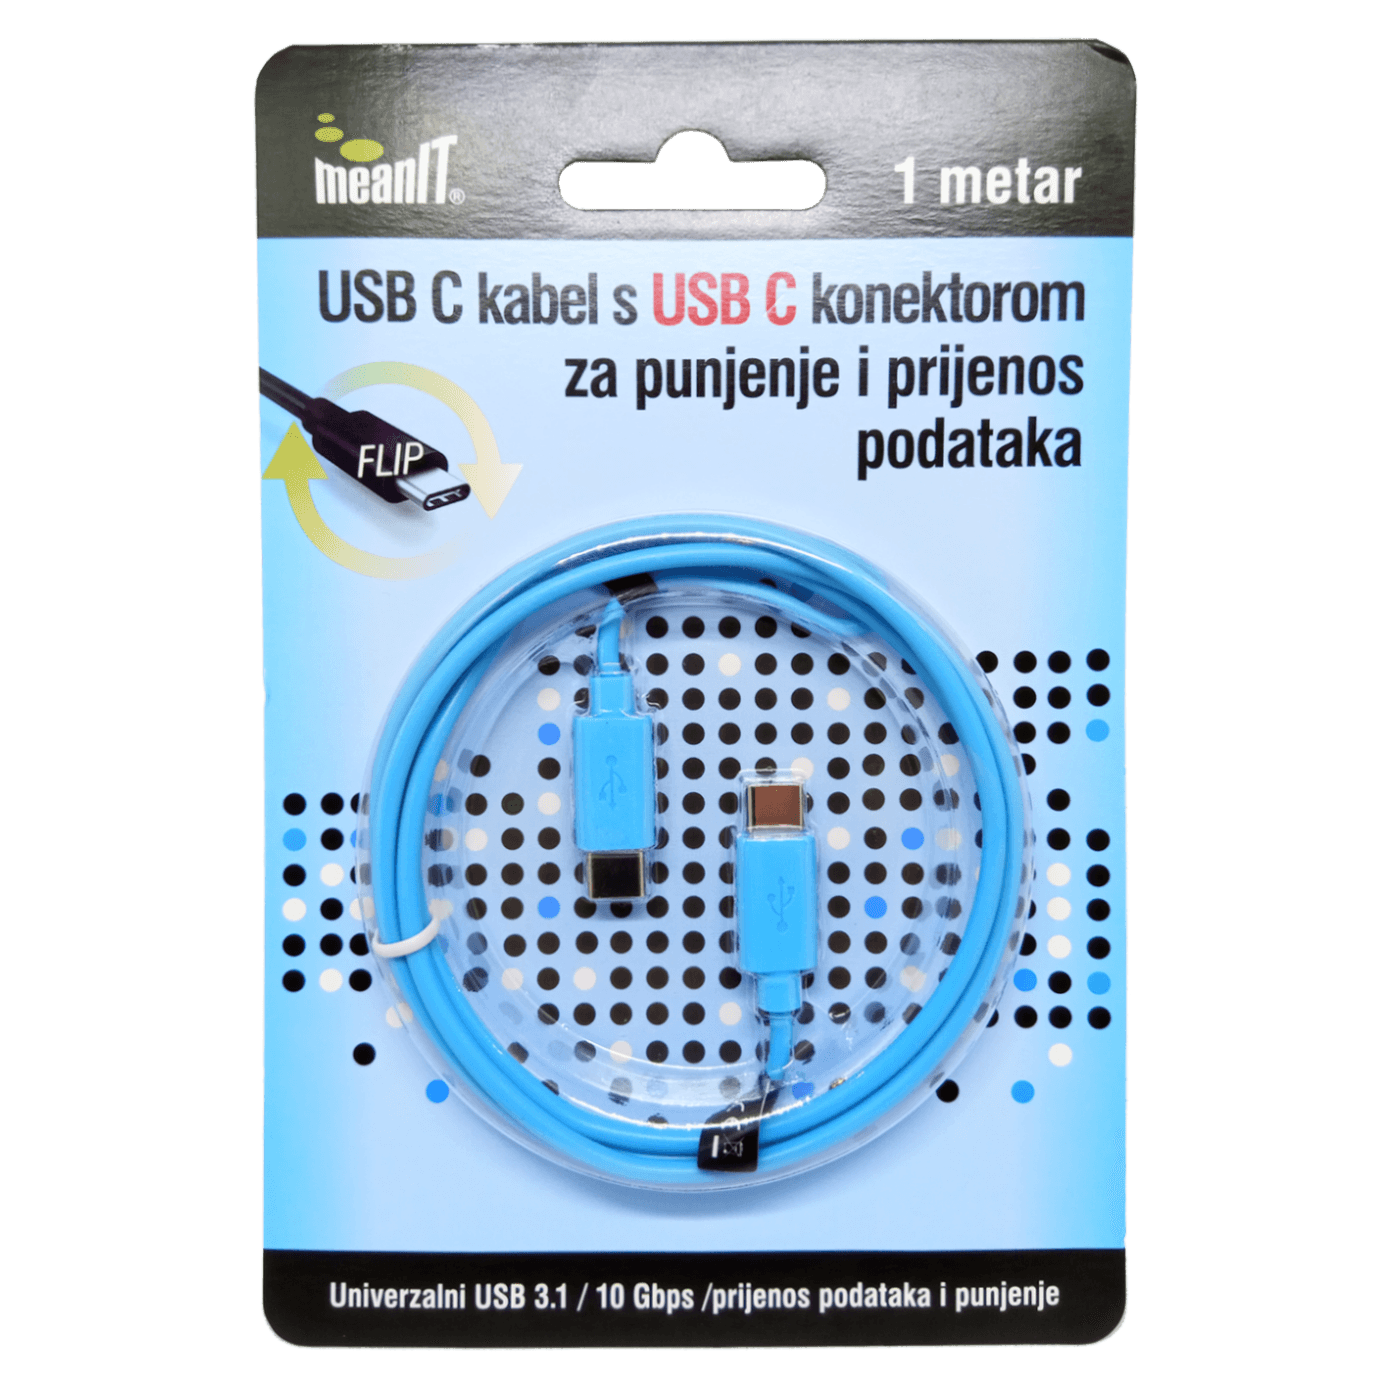 MEANIT USB kabl za smartphone USB C/USB C 1m